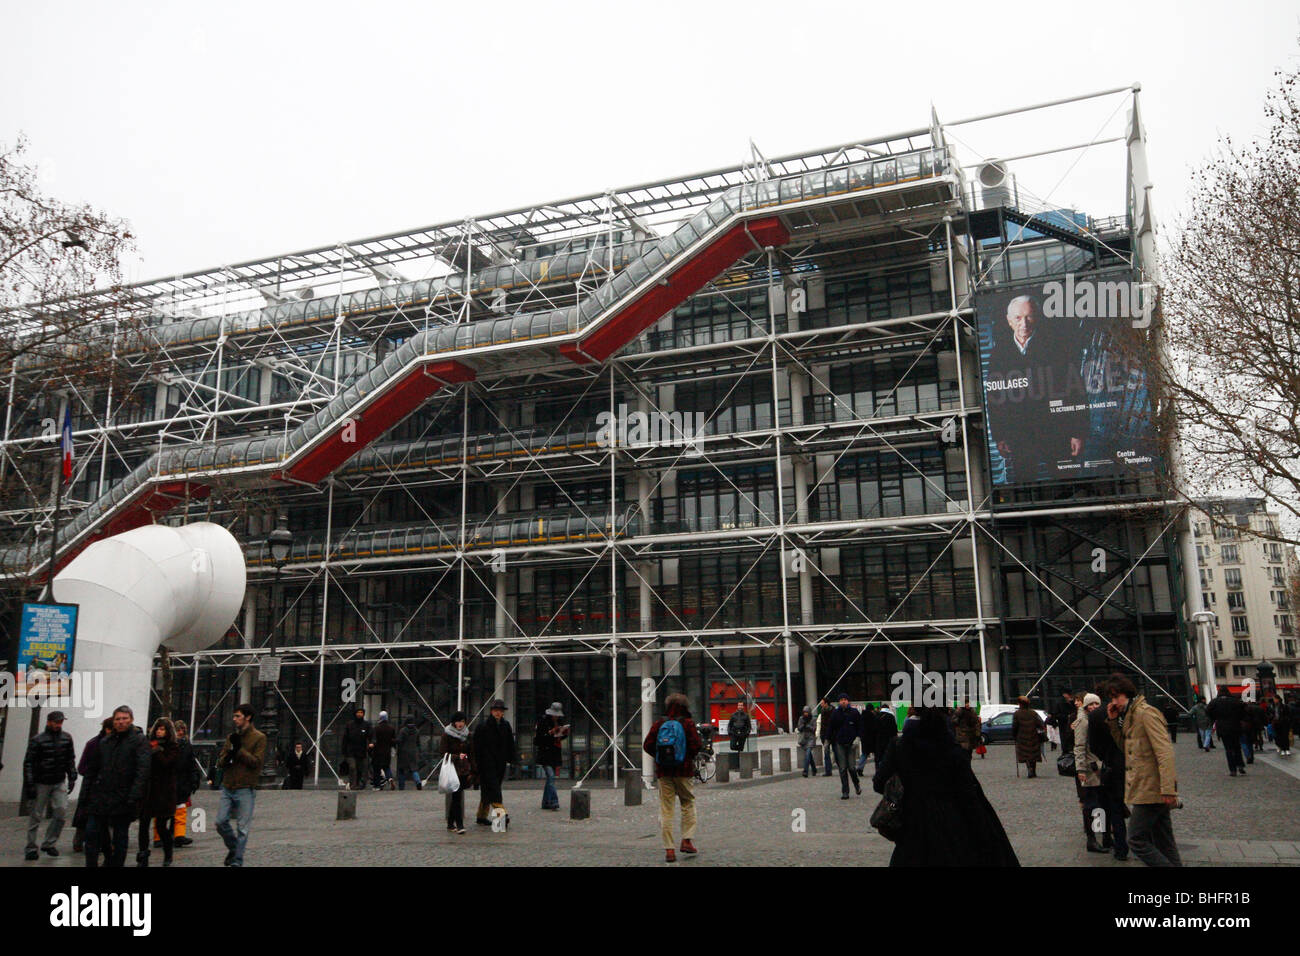 The Pompidou centre art museum in Paris. Stock Photo